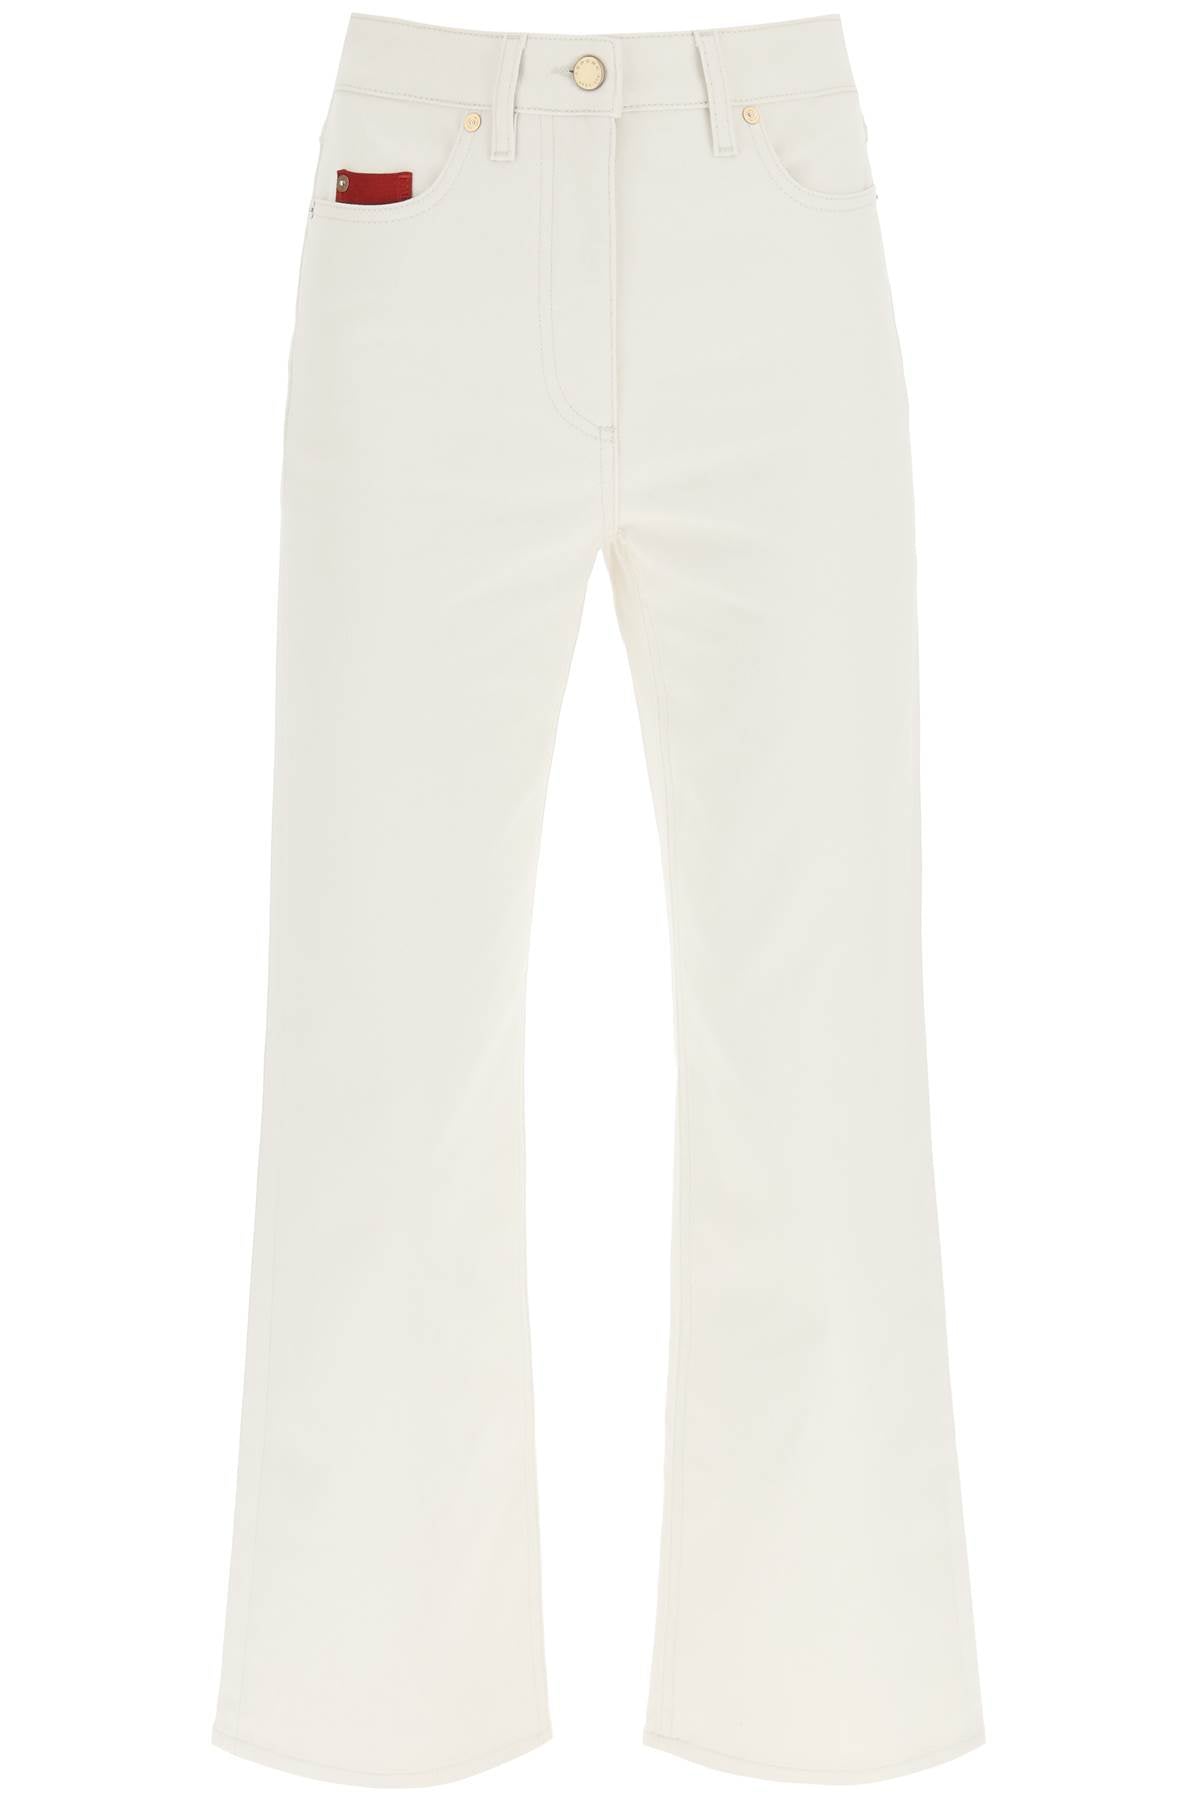 Agnona cotton cashmere jeans T70513 Y UC015 CHALK